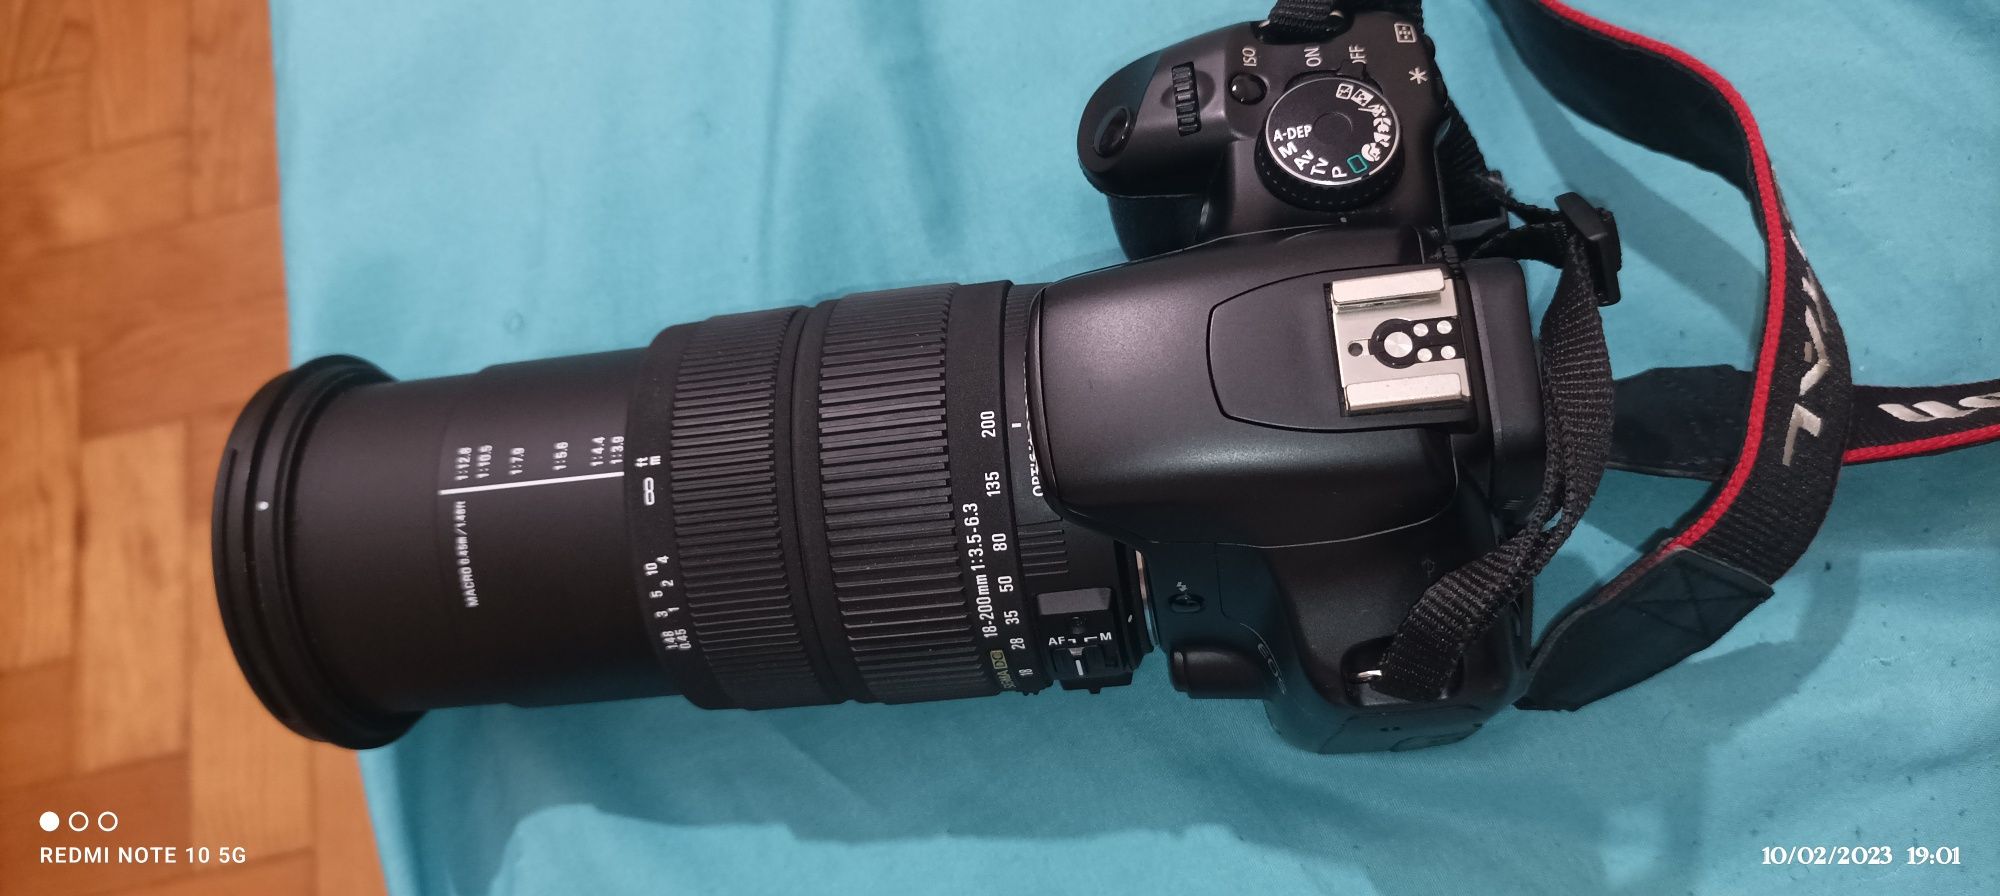 Câmera fotográfica Canon e lente